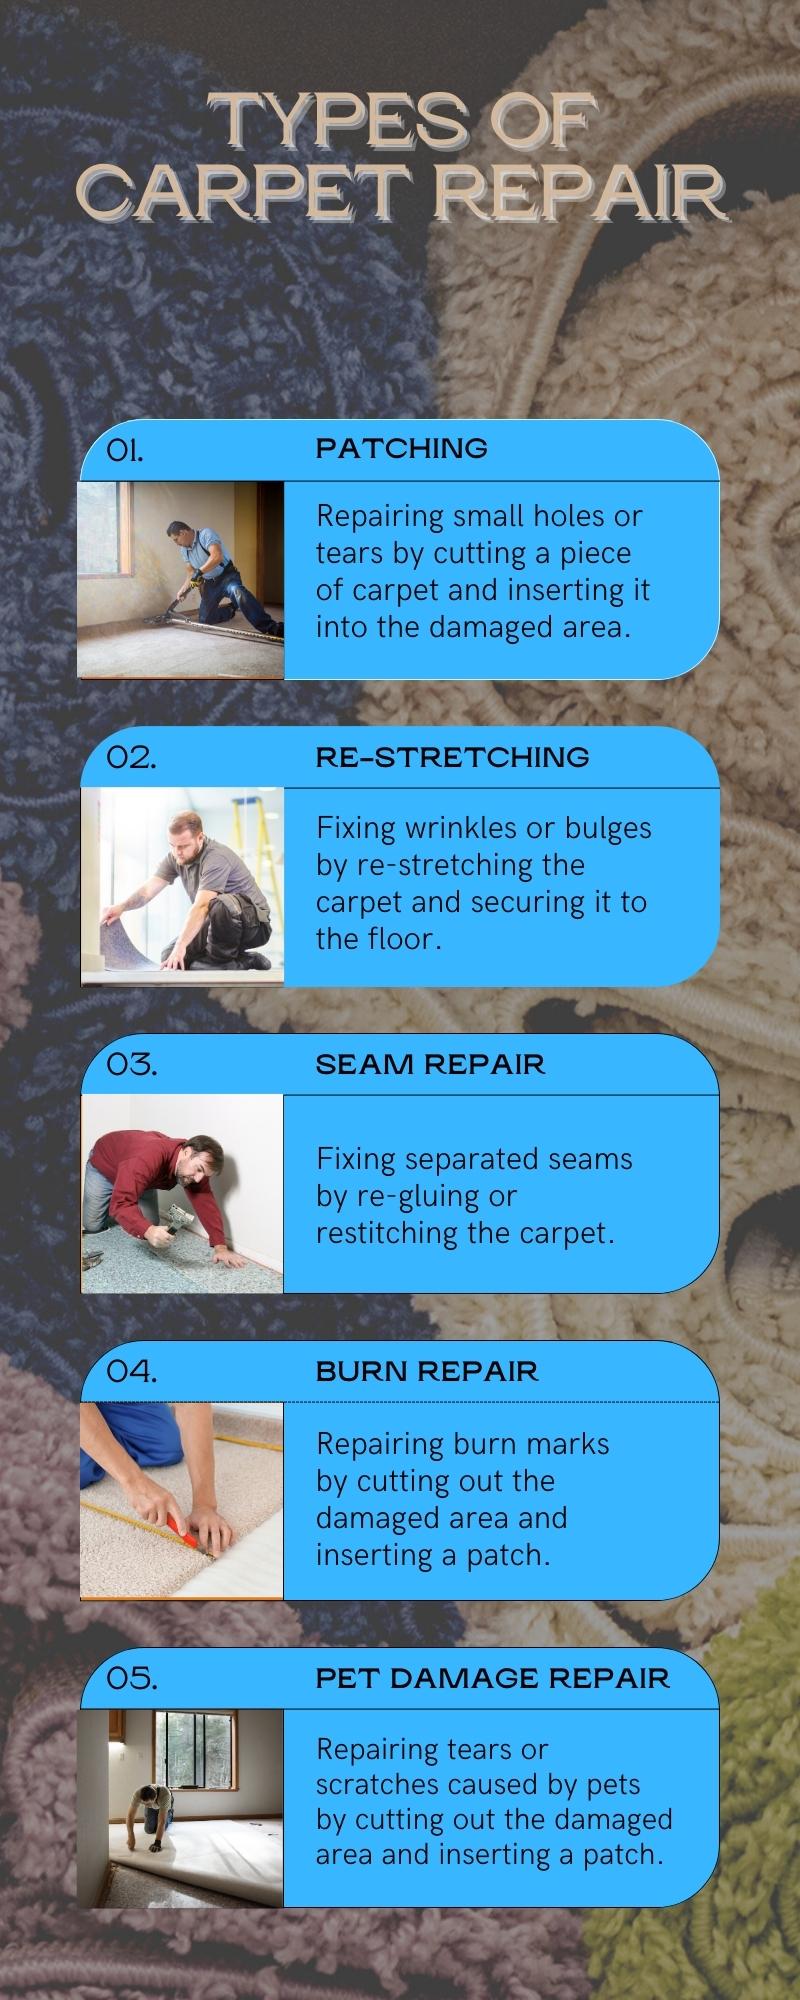 Types of Carpet Repair